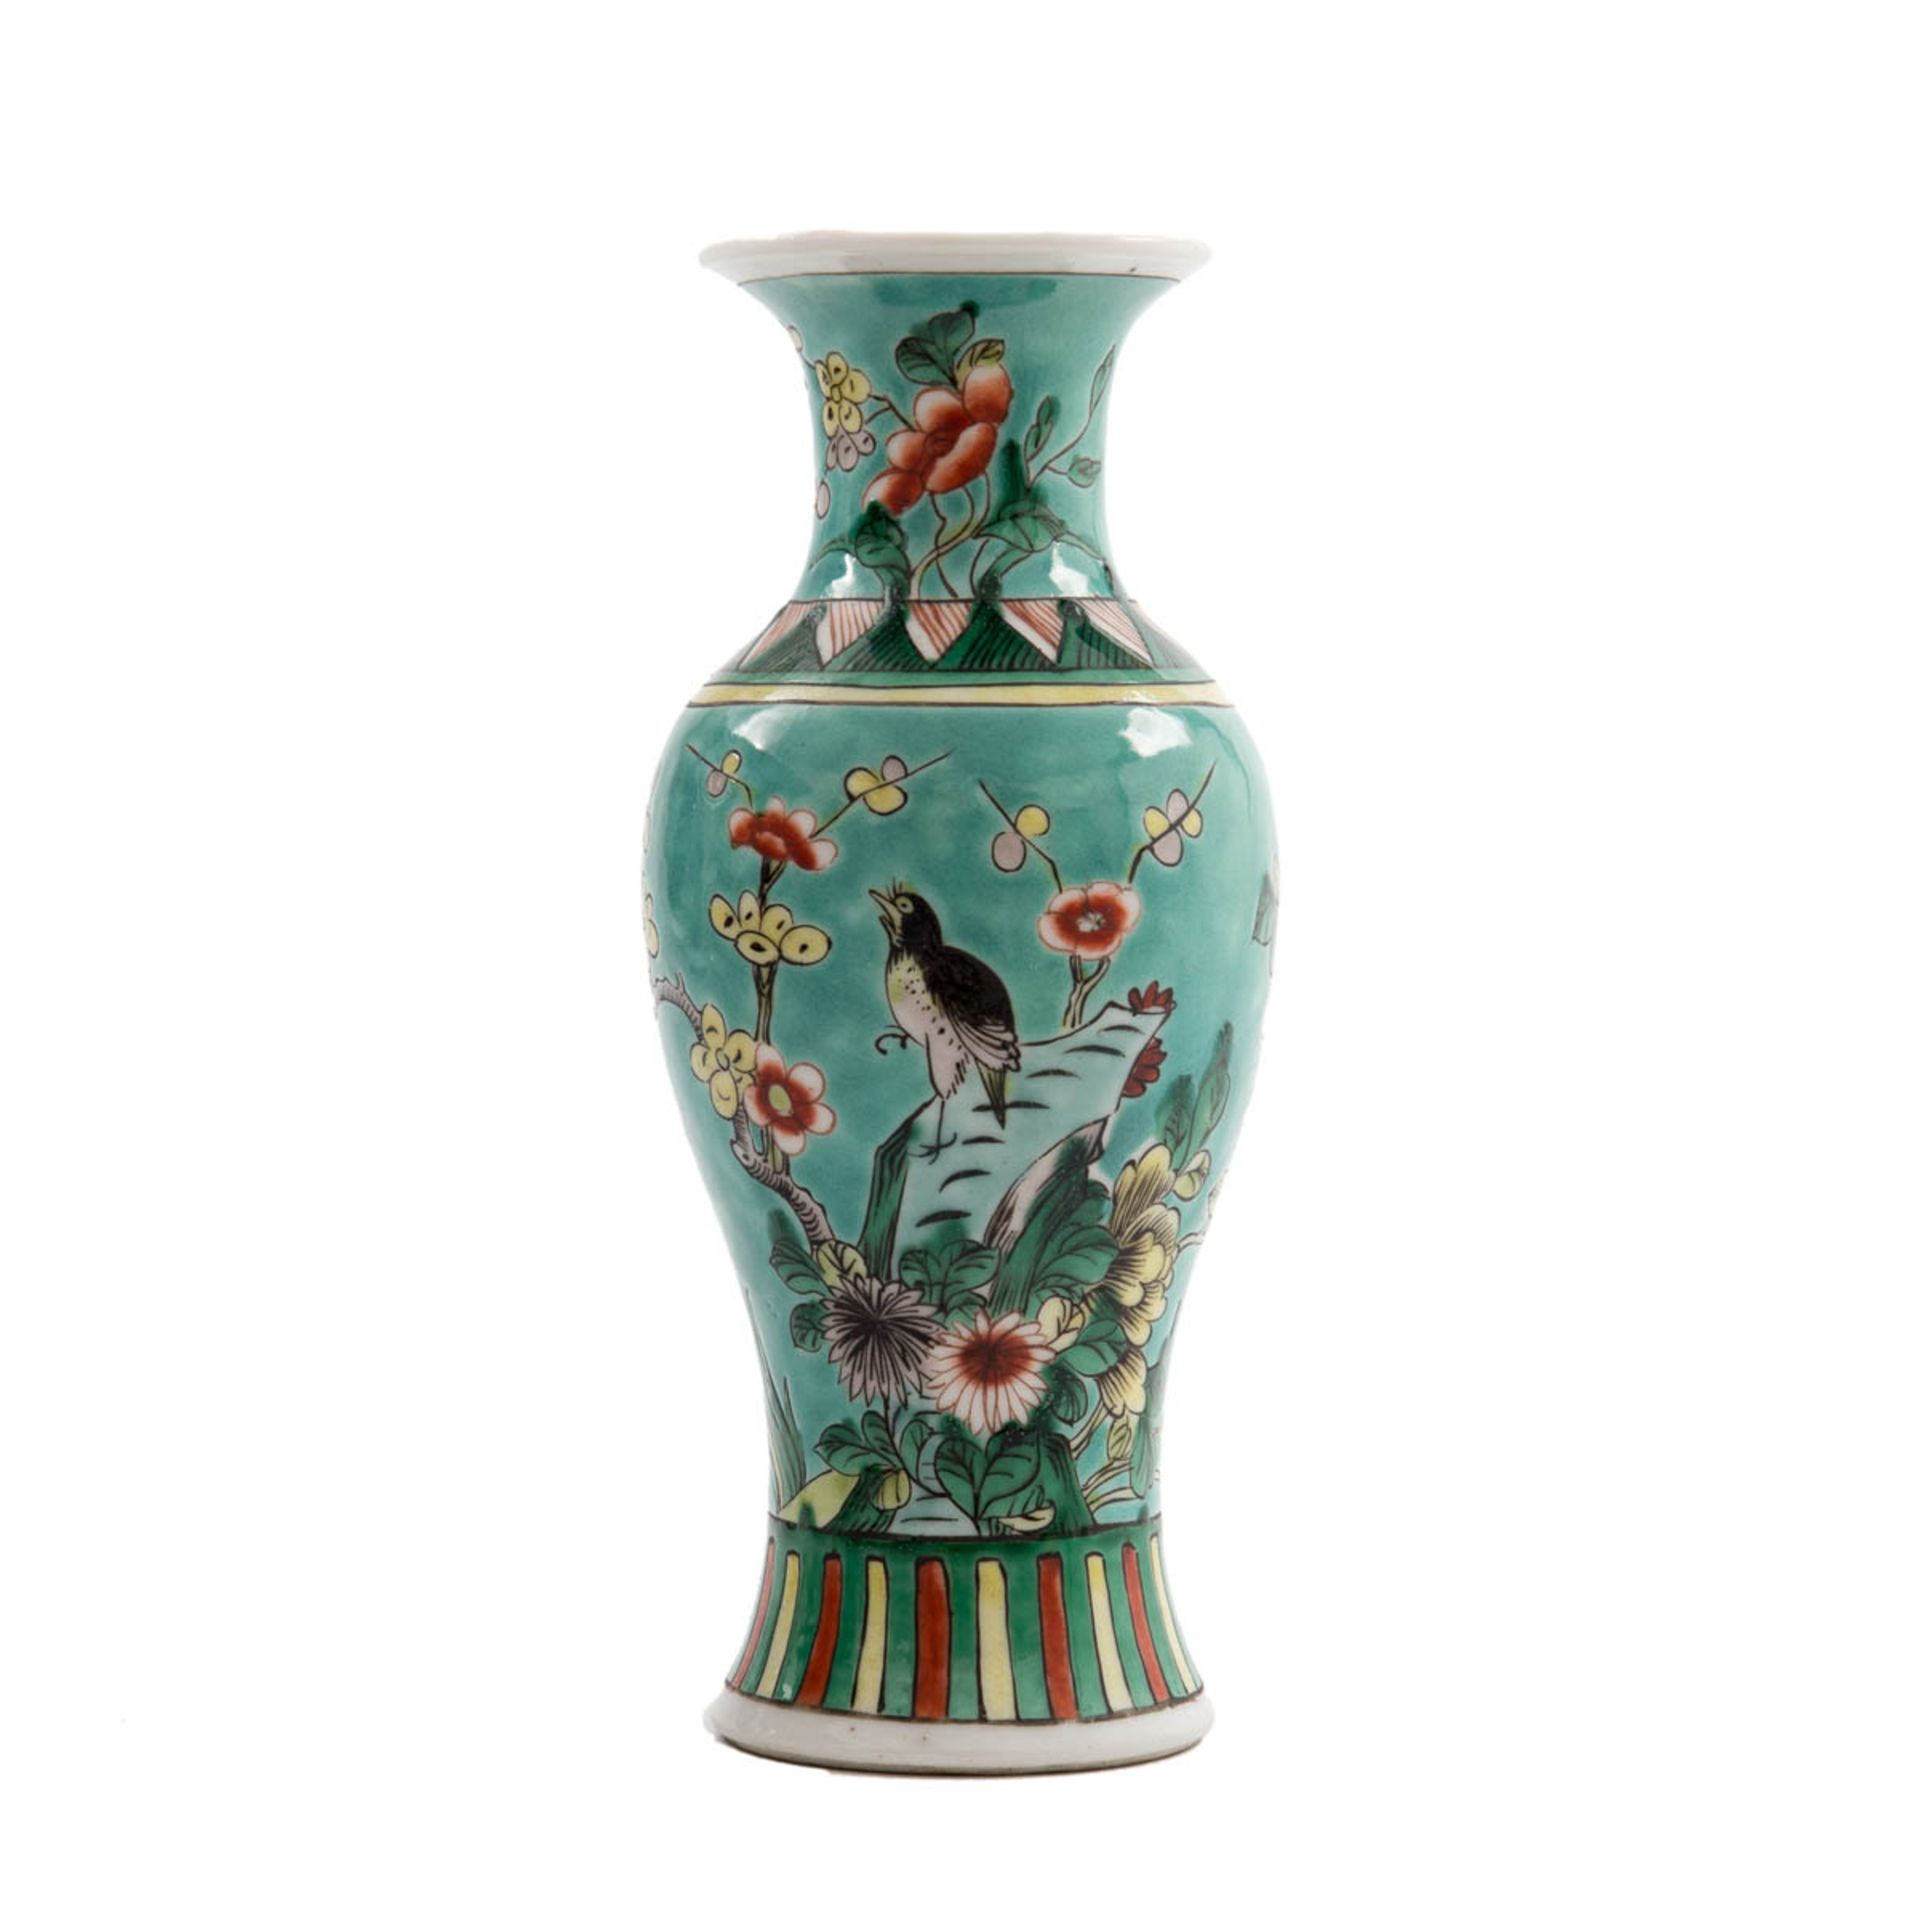 Ziervase, China 19.Jh. Porzellan mit seegrünem, polychrom mit Päonien, kleinem Singvogel zwischen